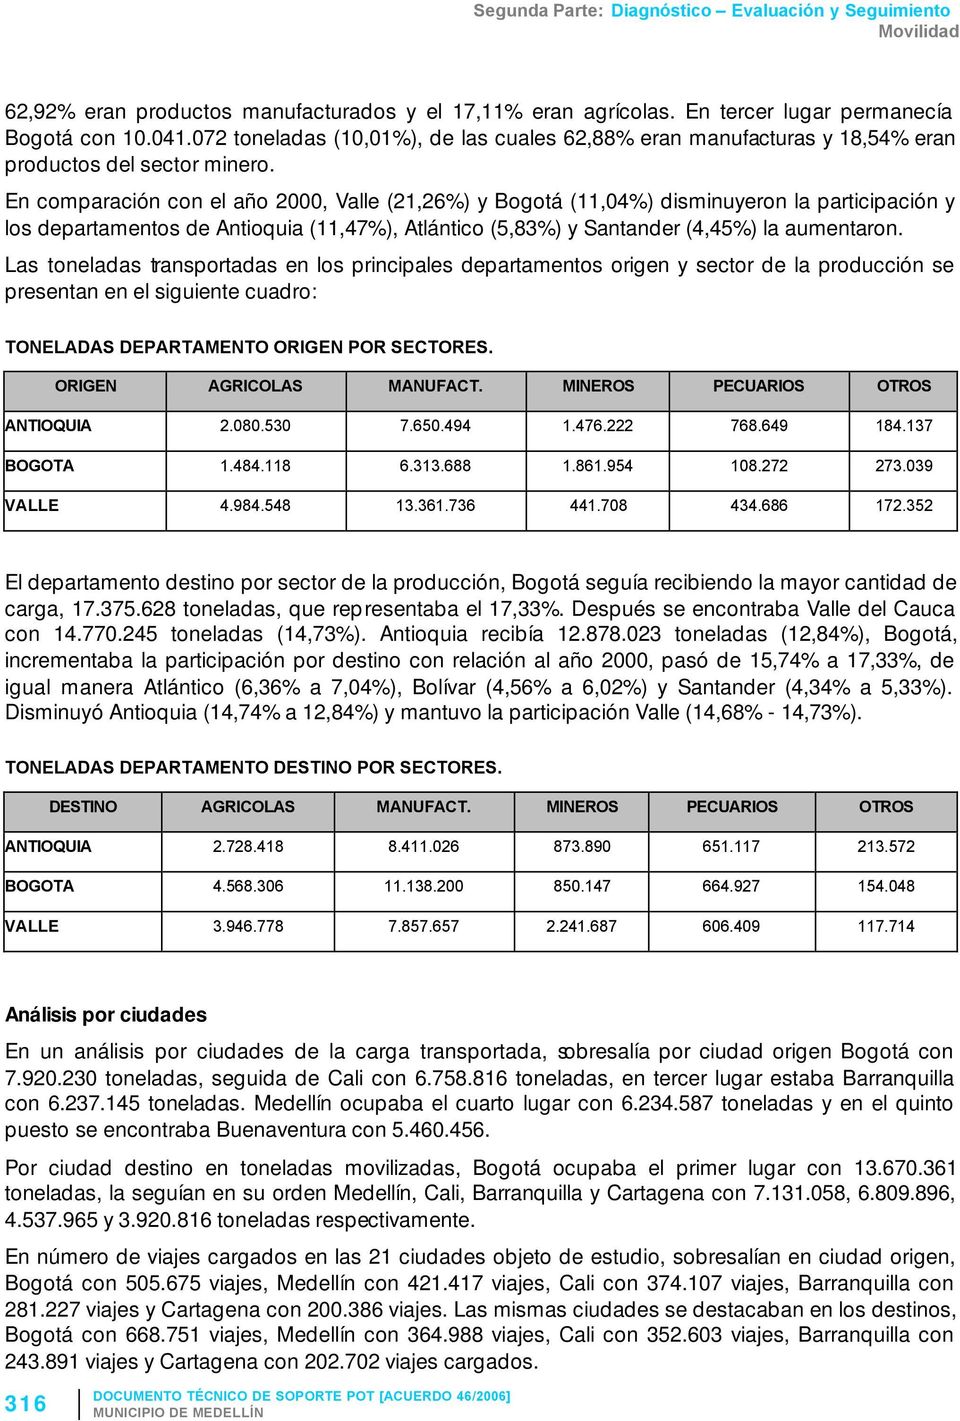 En comparación con el año 2000, Valle (21,26%) y Bogotá (11,04%) disminuyeron la participación y los departamentos de Antioquia (11,47%), Atlántico (5,83%) y Santander (4,45%) la aumentaron.